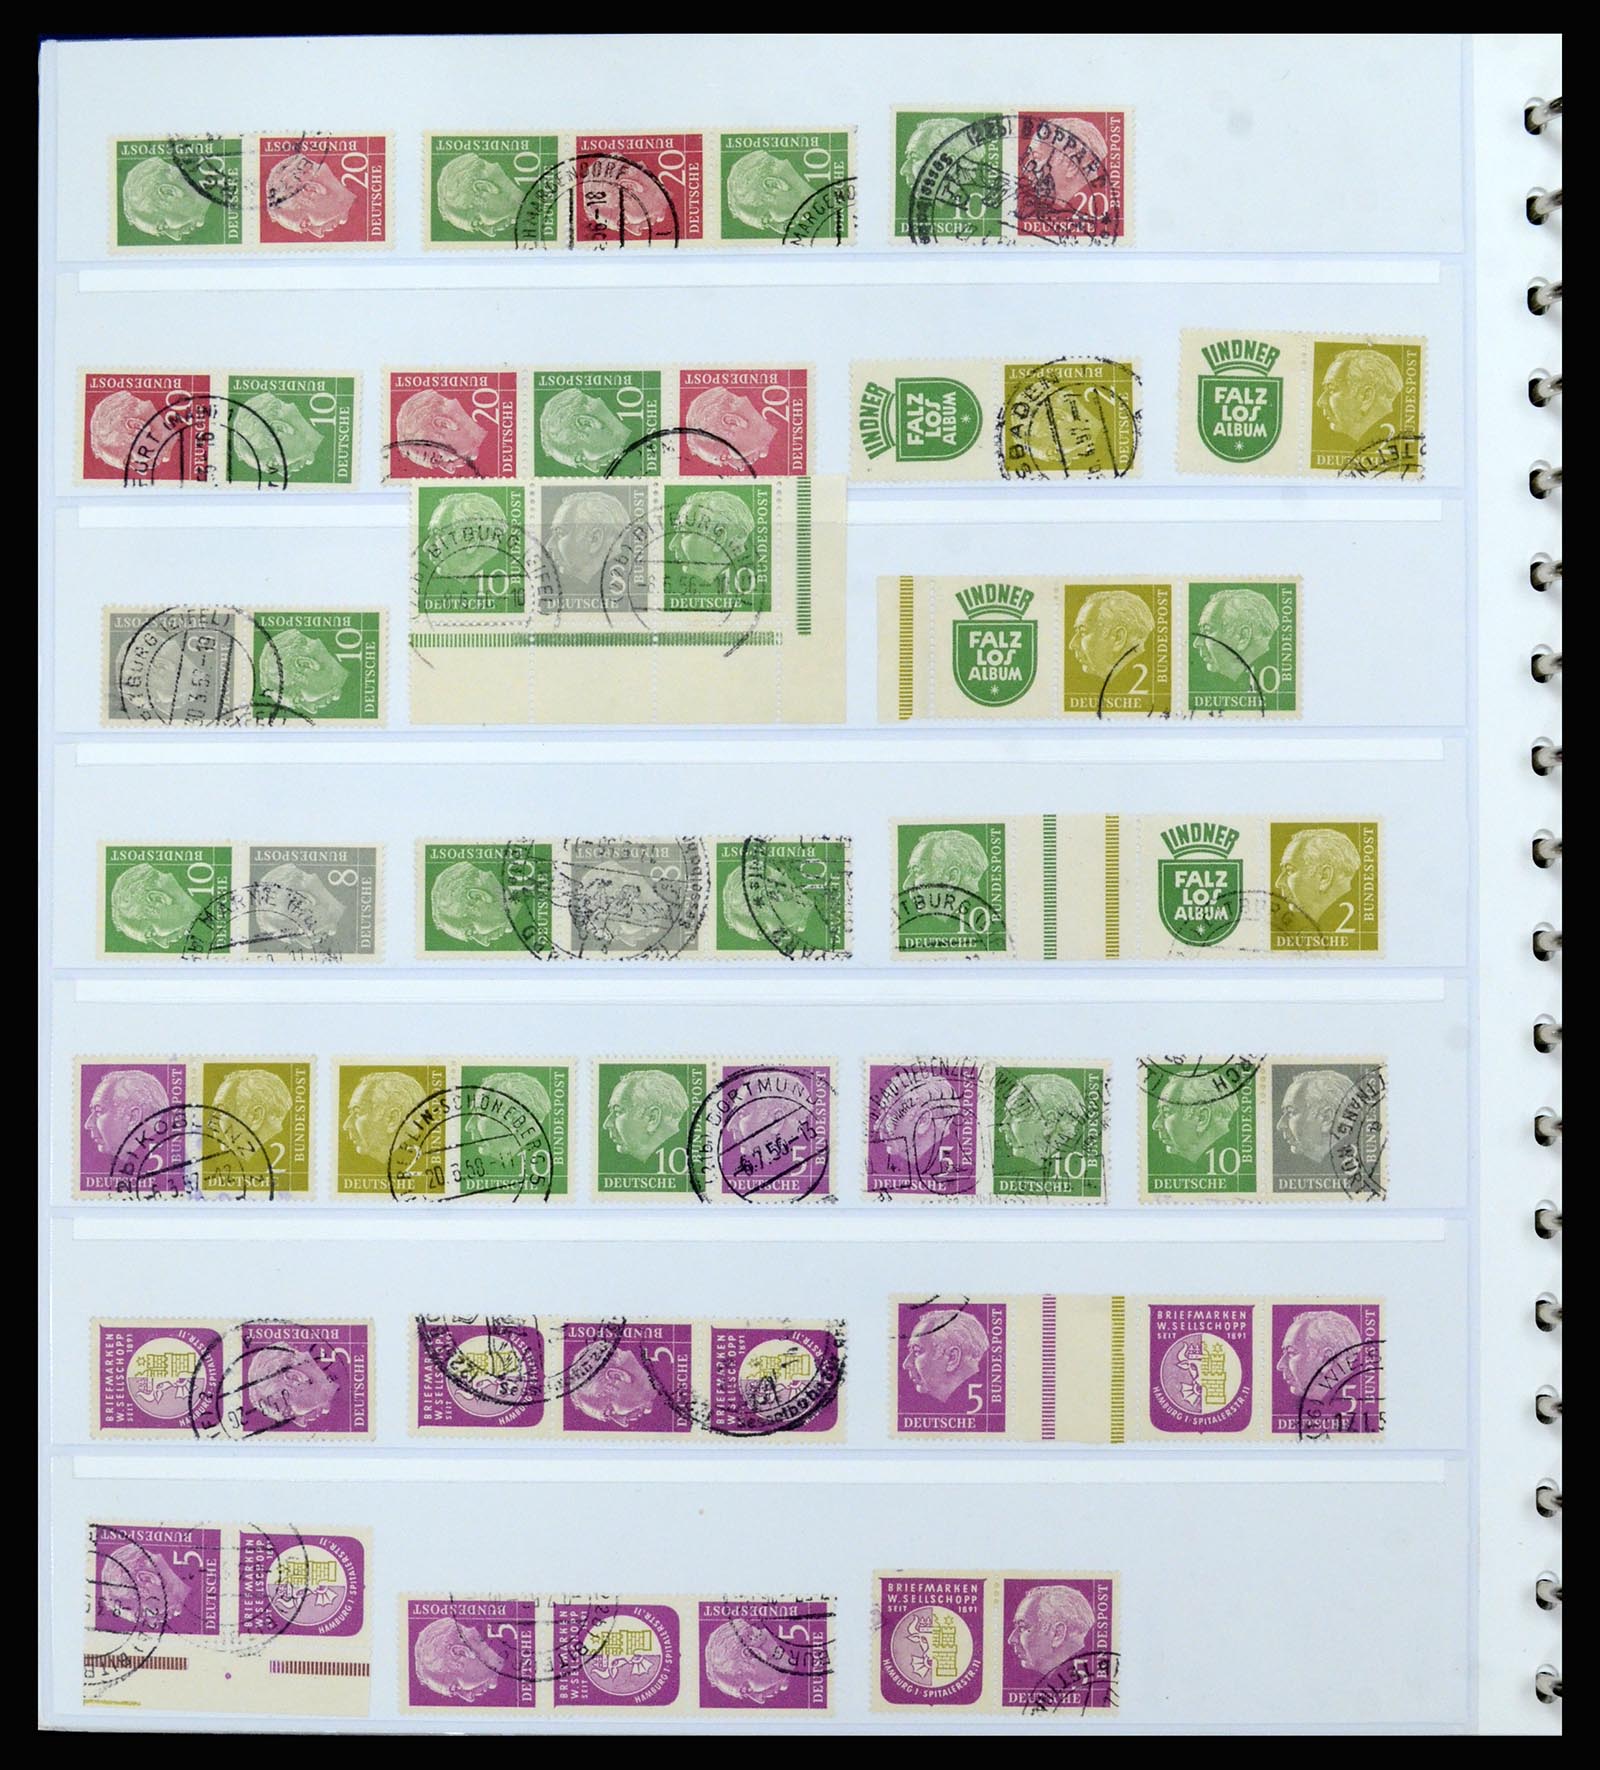 37190 028 - Postzegelverzameling 37190 Duitsland combinaties 1912-1991.